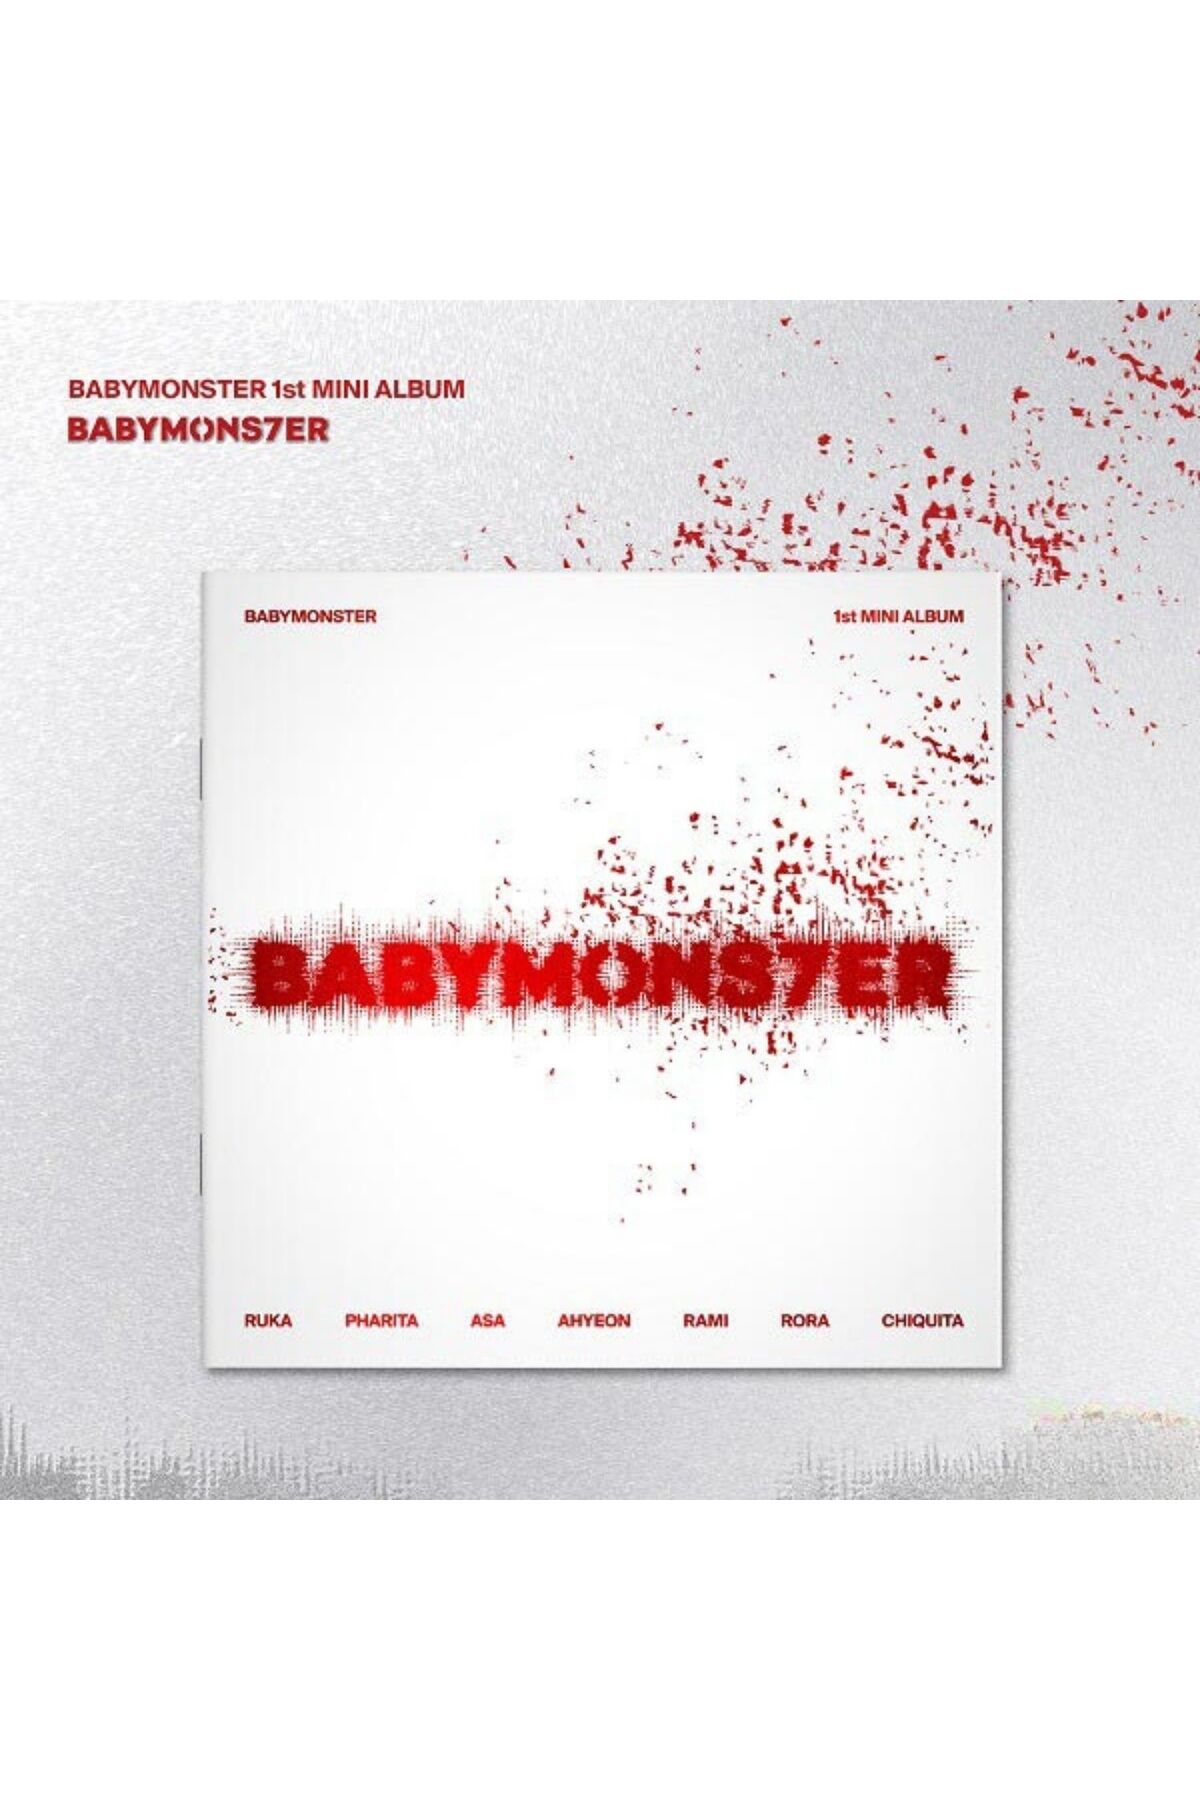 Kpop Dünyasi BABYMONSTER 1st MINI ALBUM – BABYMONS7ER (Photobook Ver.)